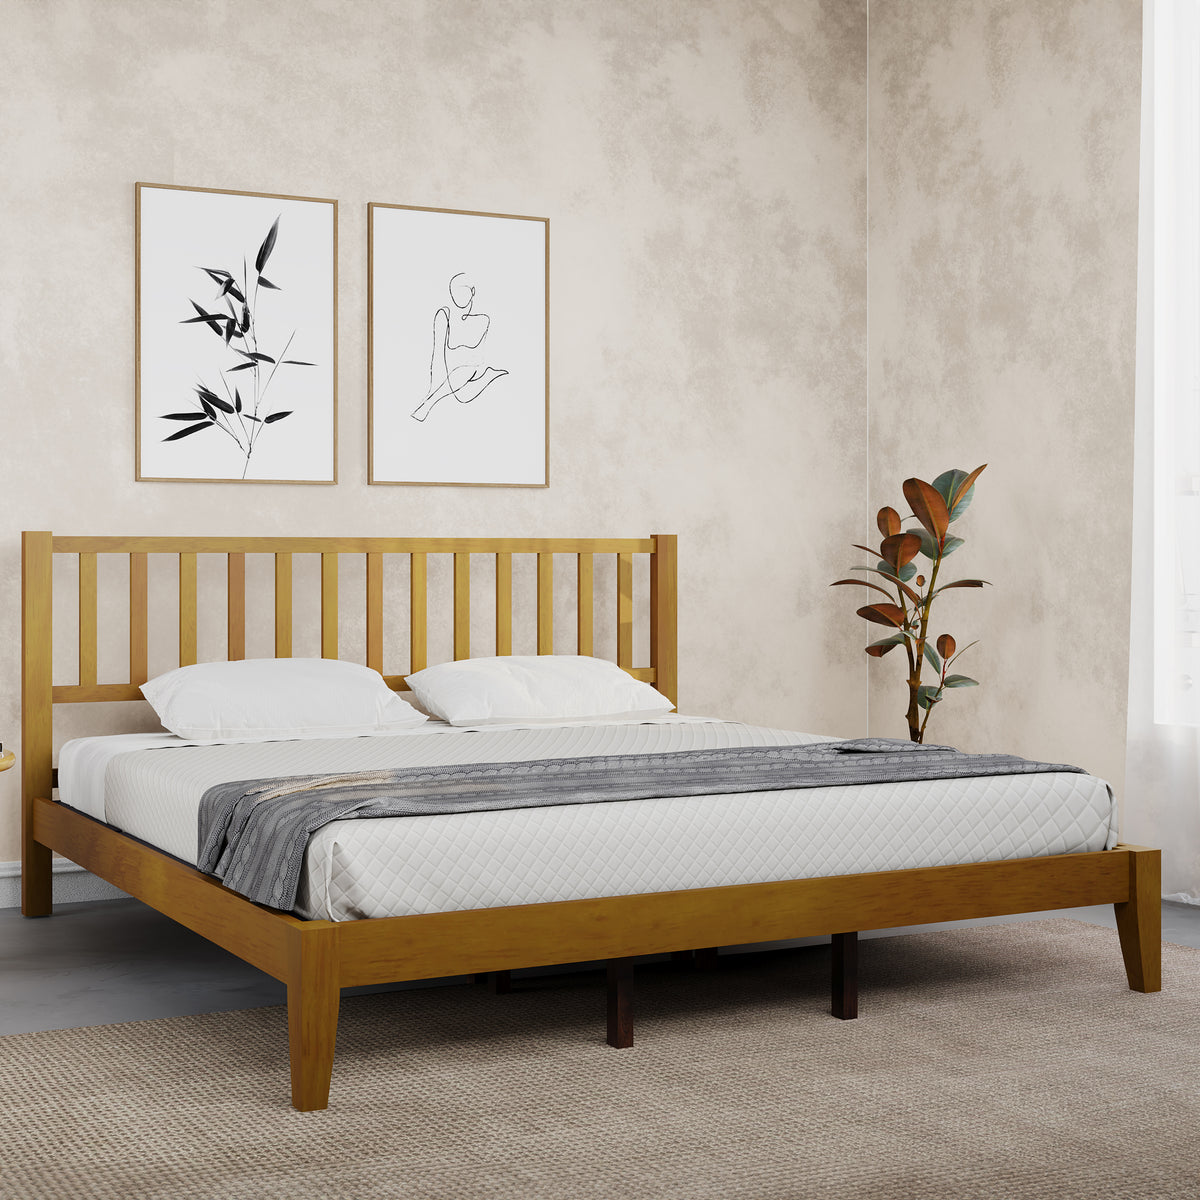 ESTRE Rohira Solid  Wood Queen Size Bed Walnut Color